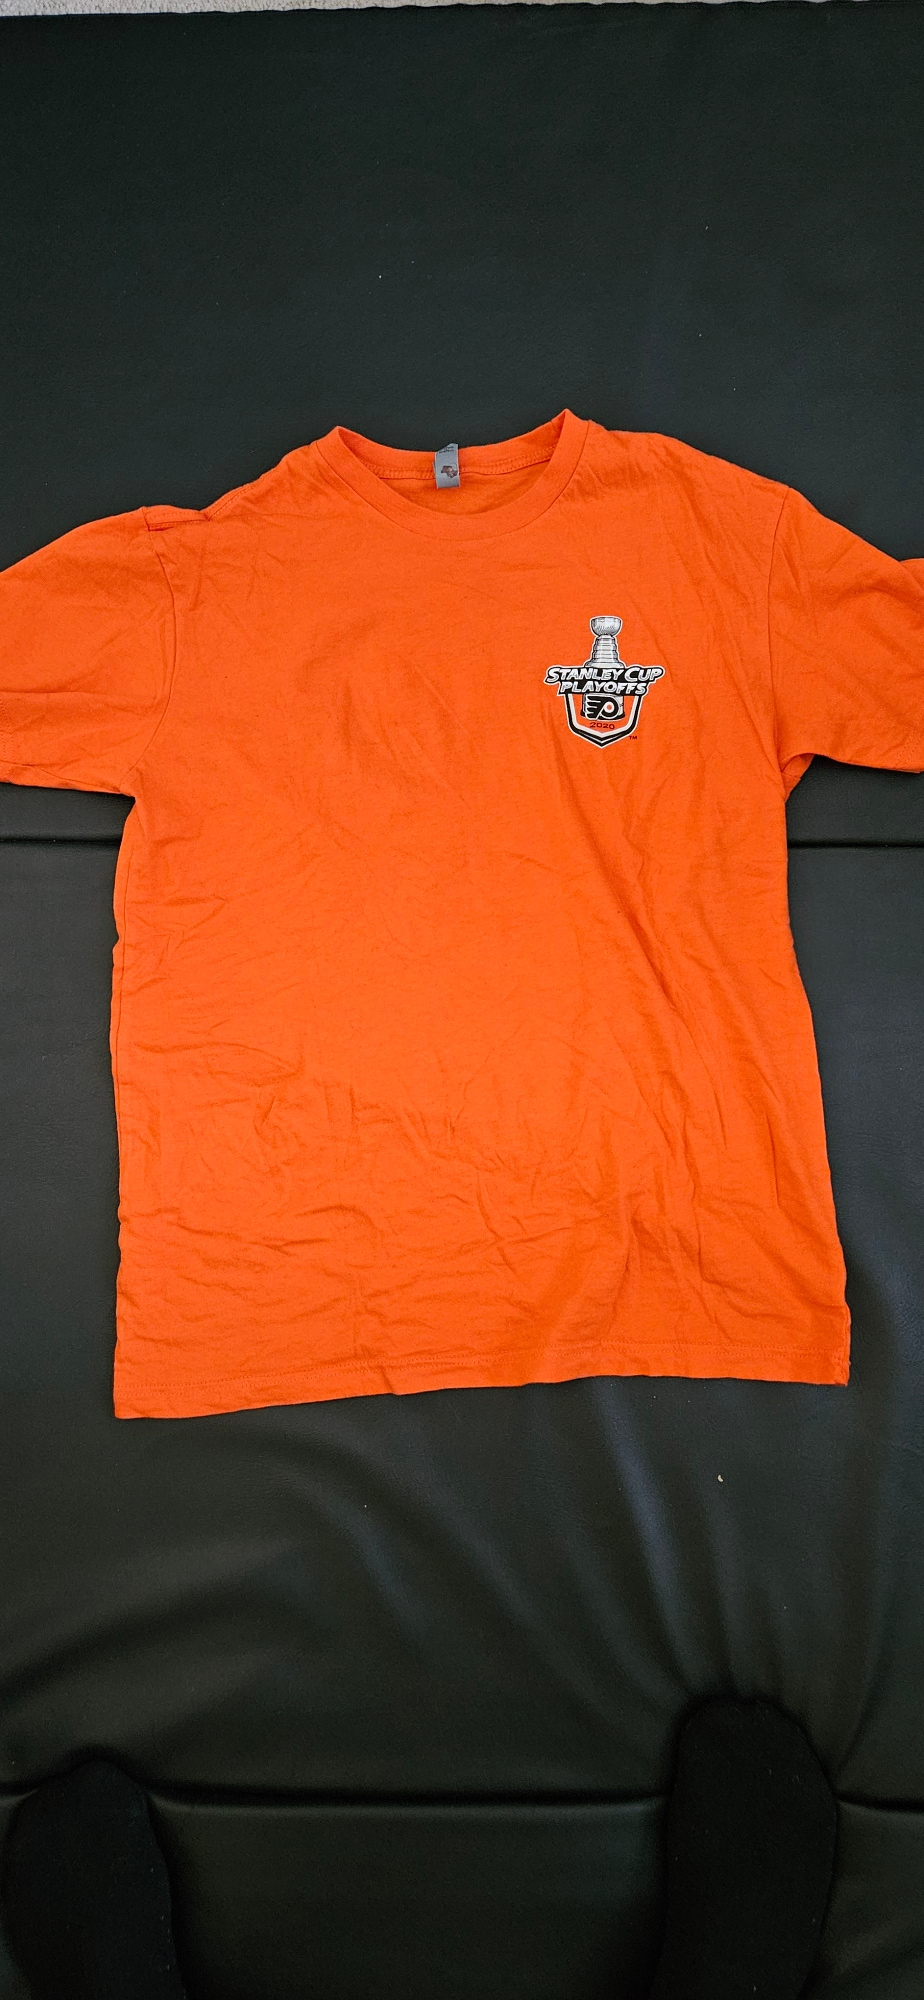 Flyers orange 2020 Stanley cup Playoffs shirt (Wells Fargo Center Exclusive)